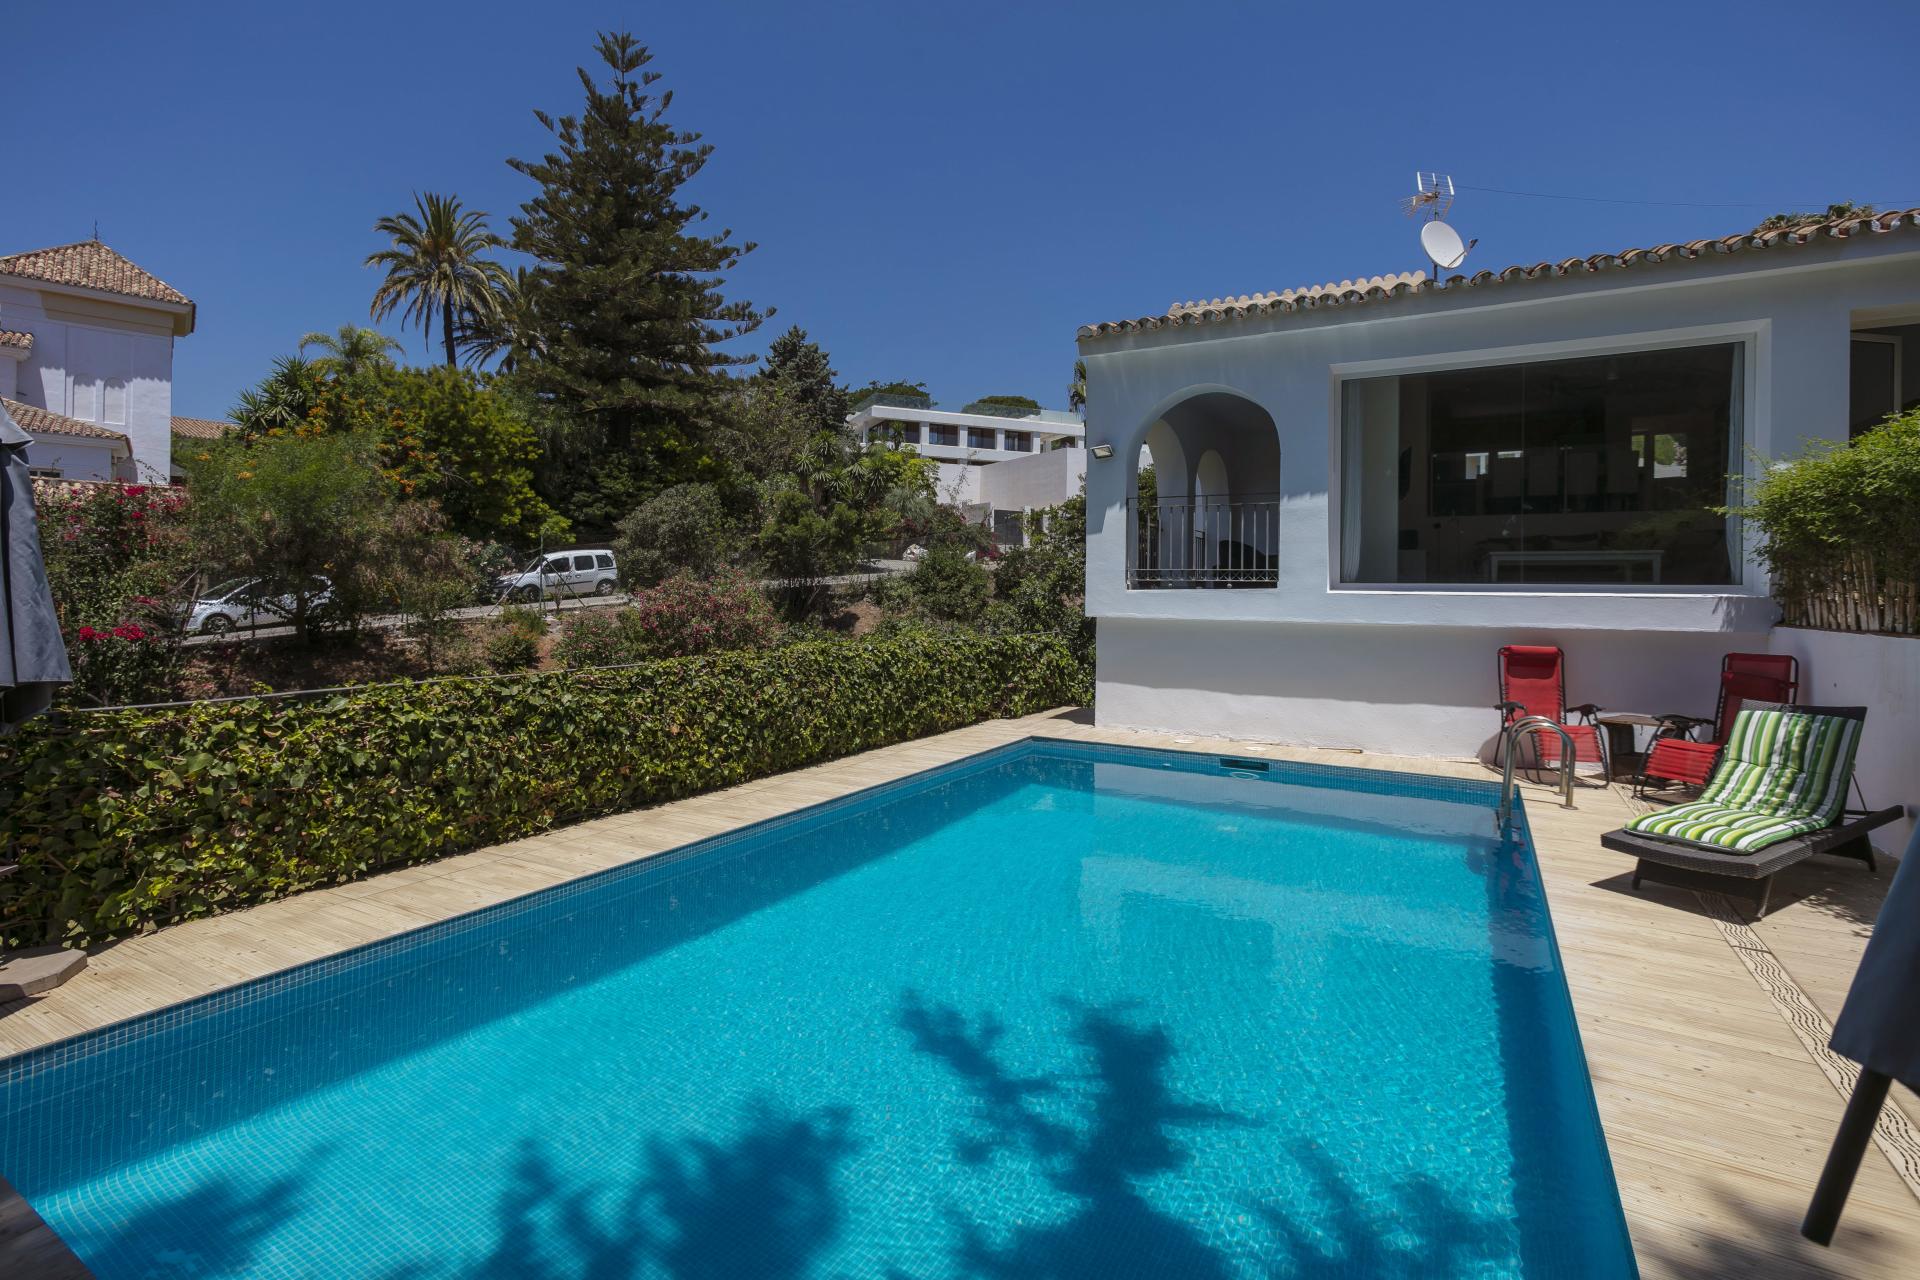 Fantastique villa de quatre chambres orientée sud-ouest, située dans une rue très calme avec de très belles vues sur la mer et les montagnes, à El Rosario, Marbella